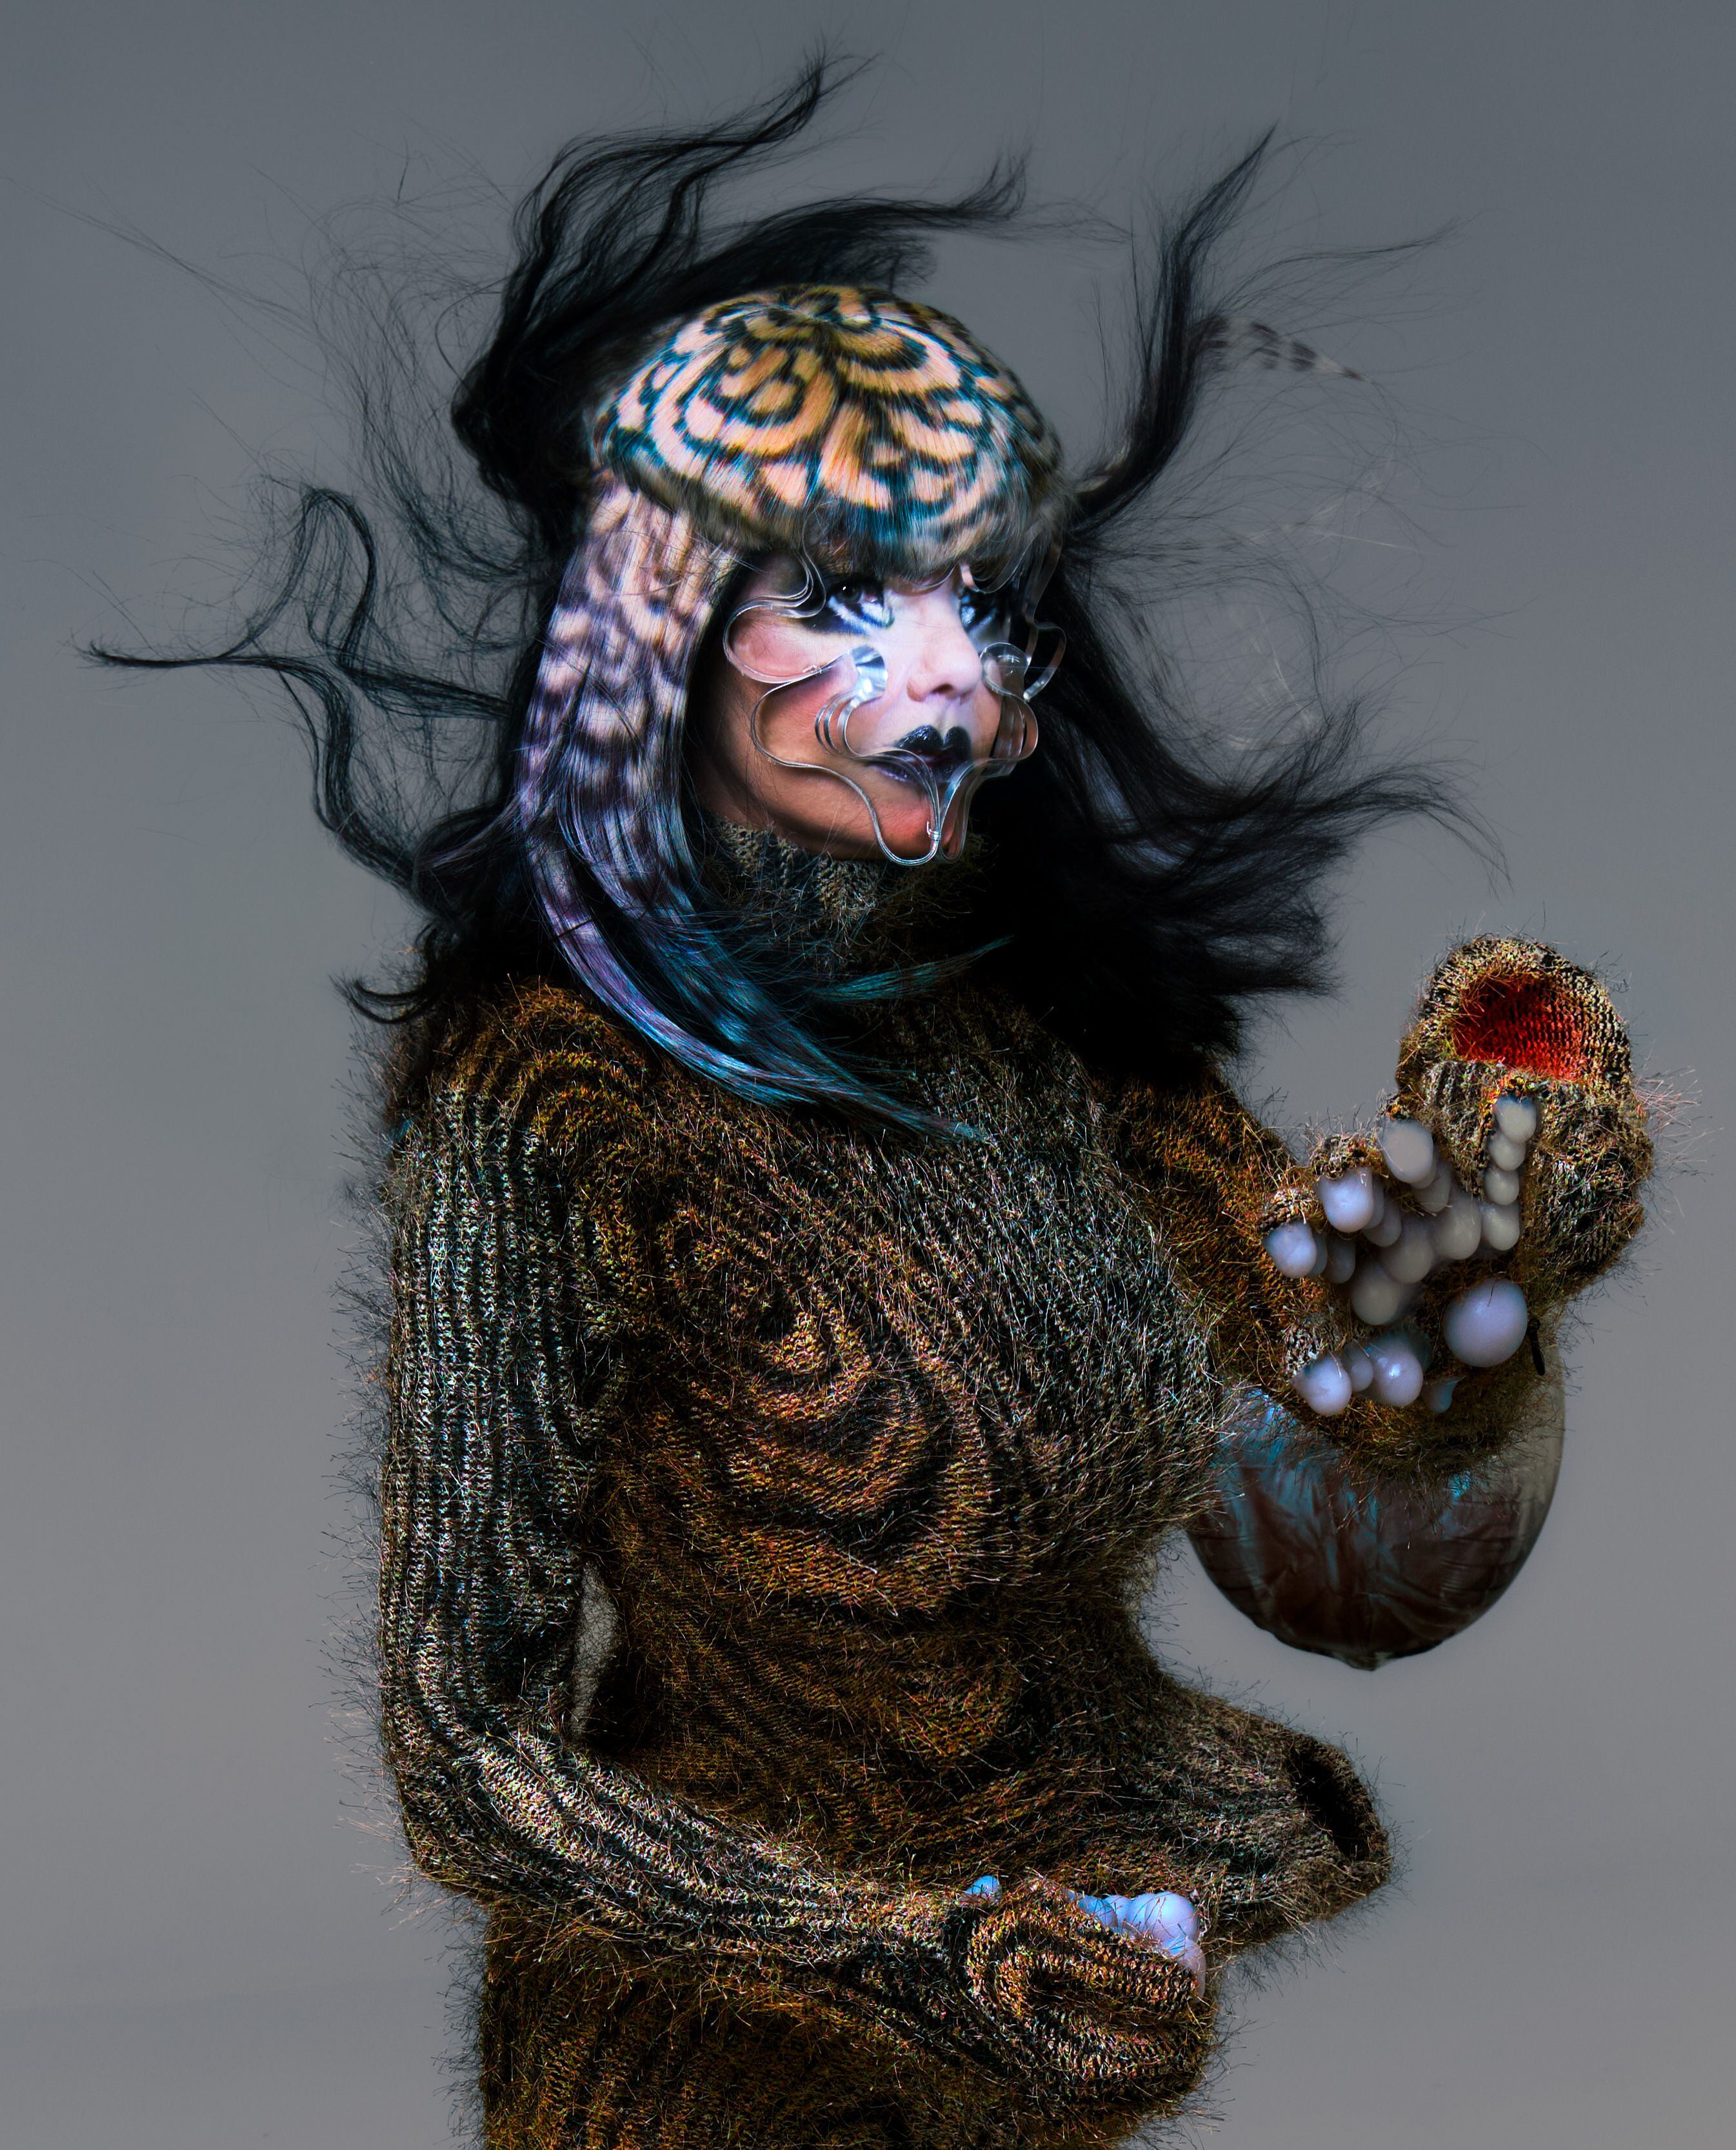 Björk, en una foto exclusiva para ICON, vistiendo un diseño de Yaz Exall y con una máscara de James T. Merry.